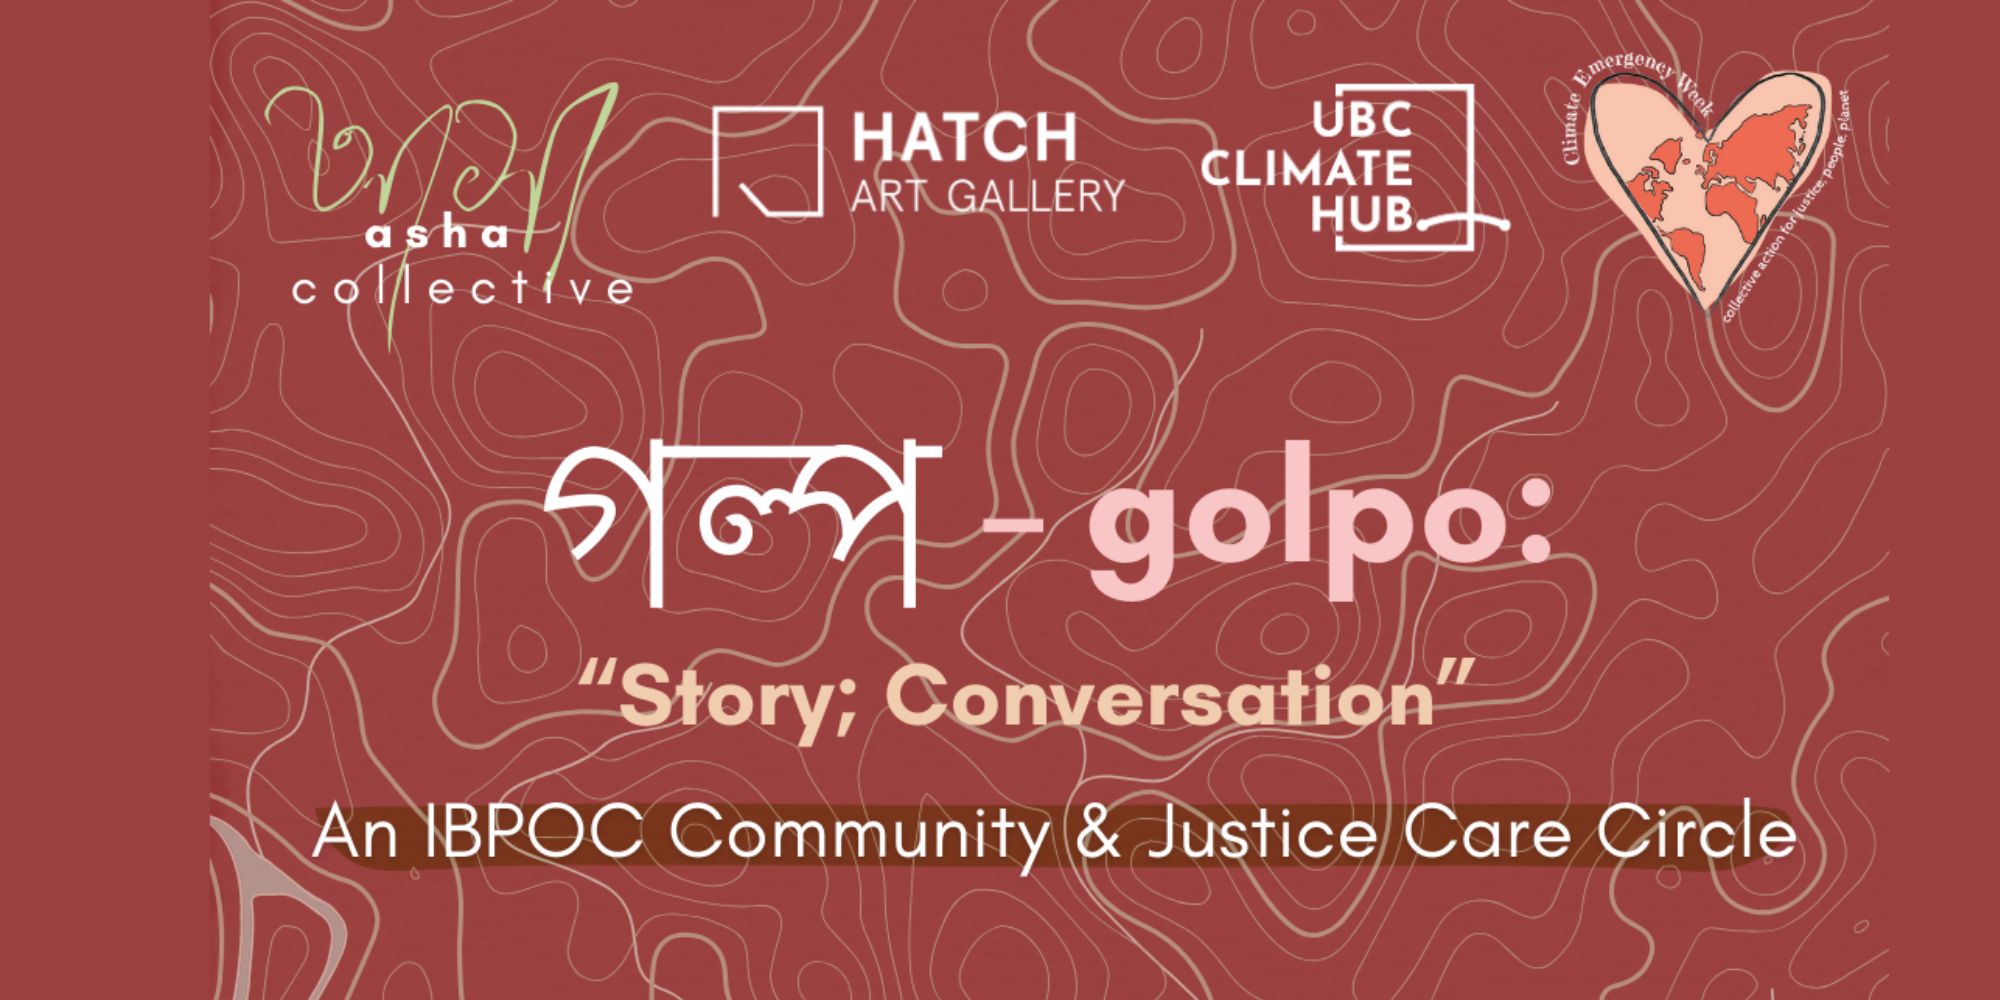 গল্প – golpo: “Story; Conversation” – An IBPOC Community and Justice Care Circle